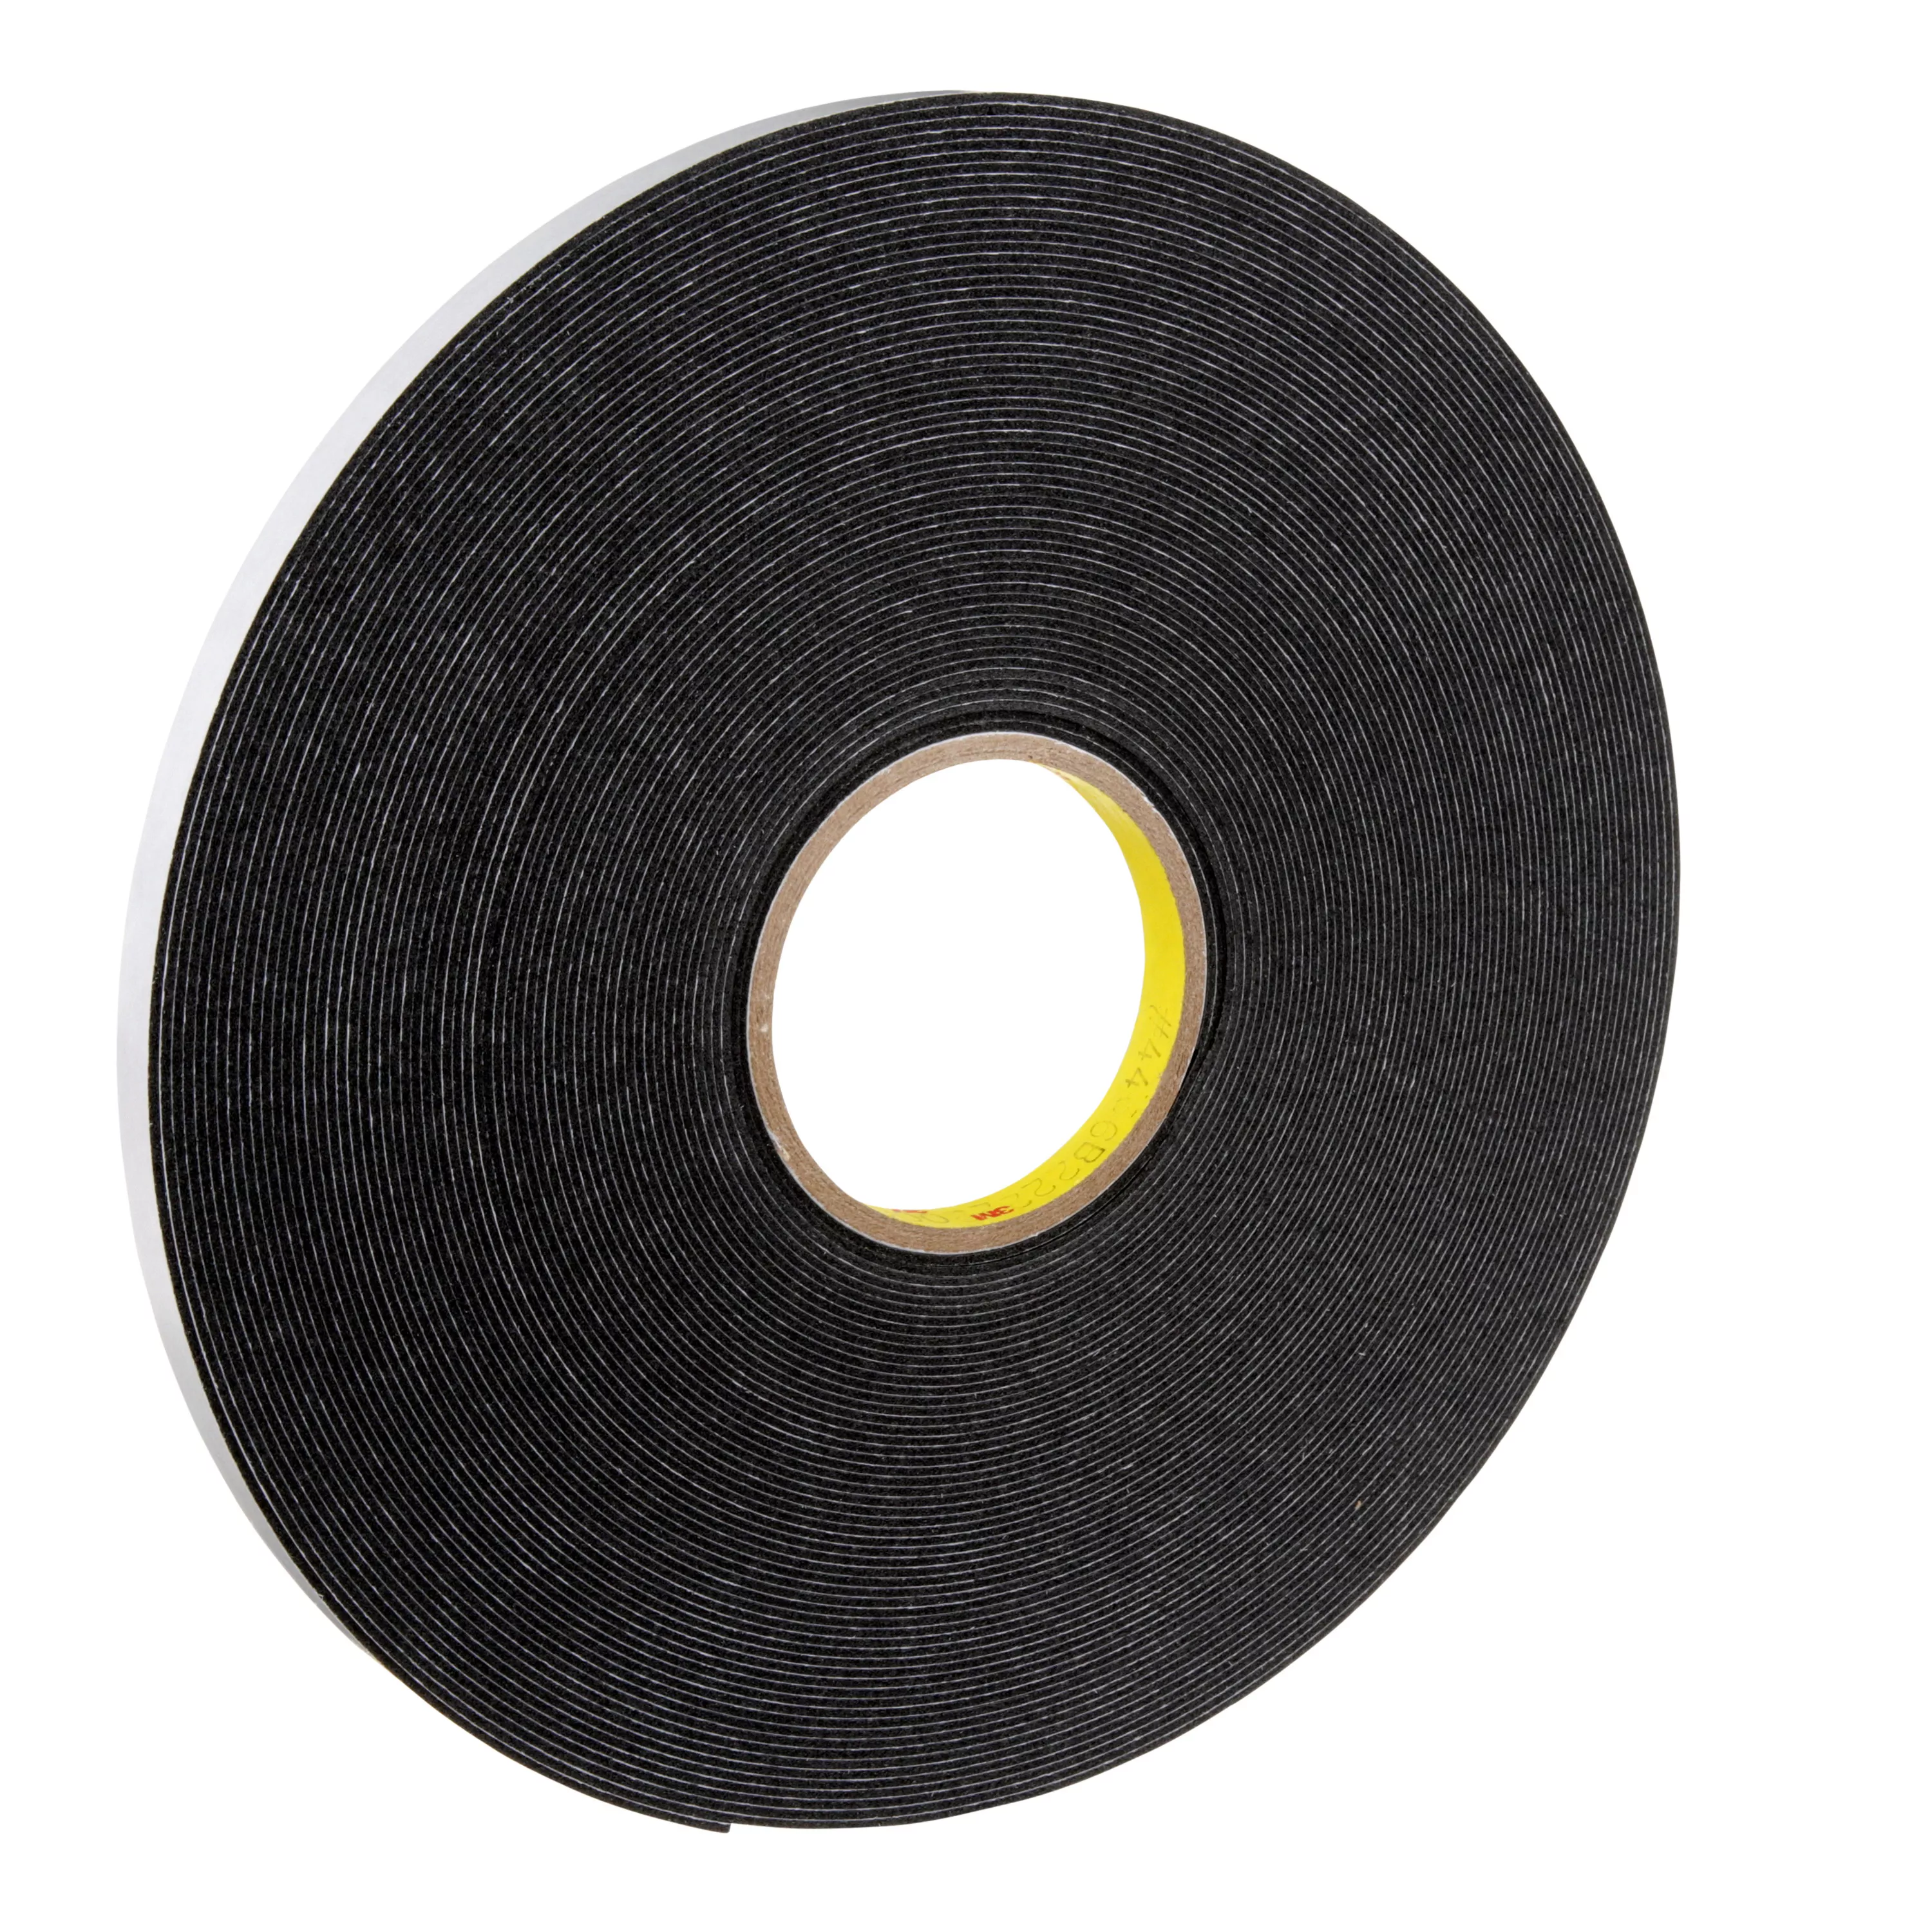 3M™ Double Coated Polyethylene Foam Tape 4466, Black, 1/2 in x 36 yd, 62
mil, 18 Roll/Case